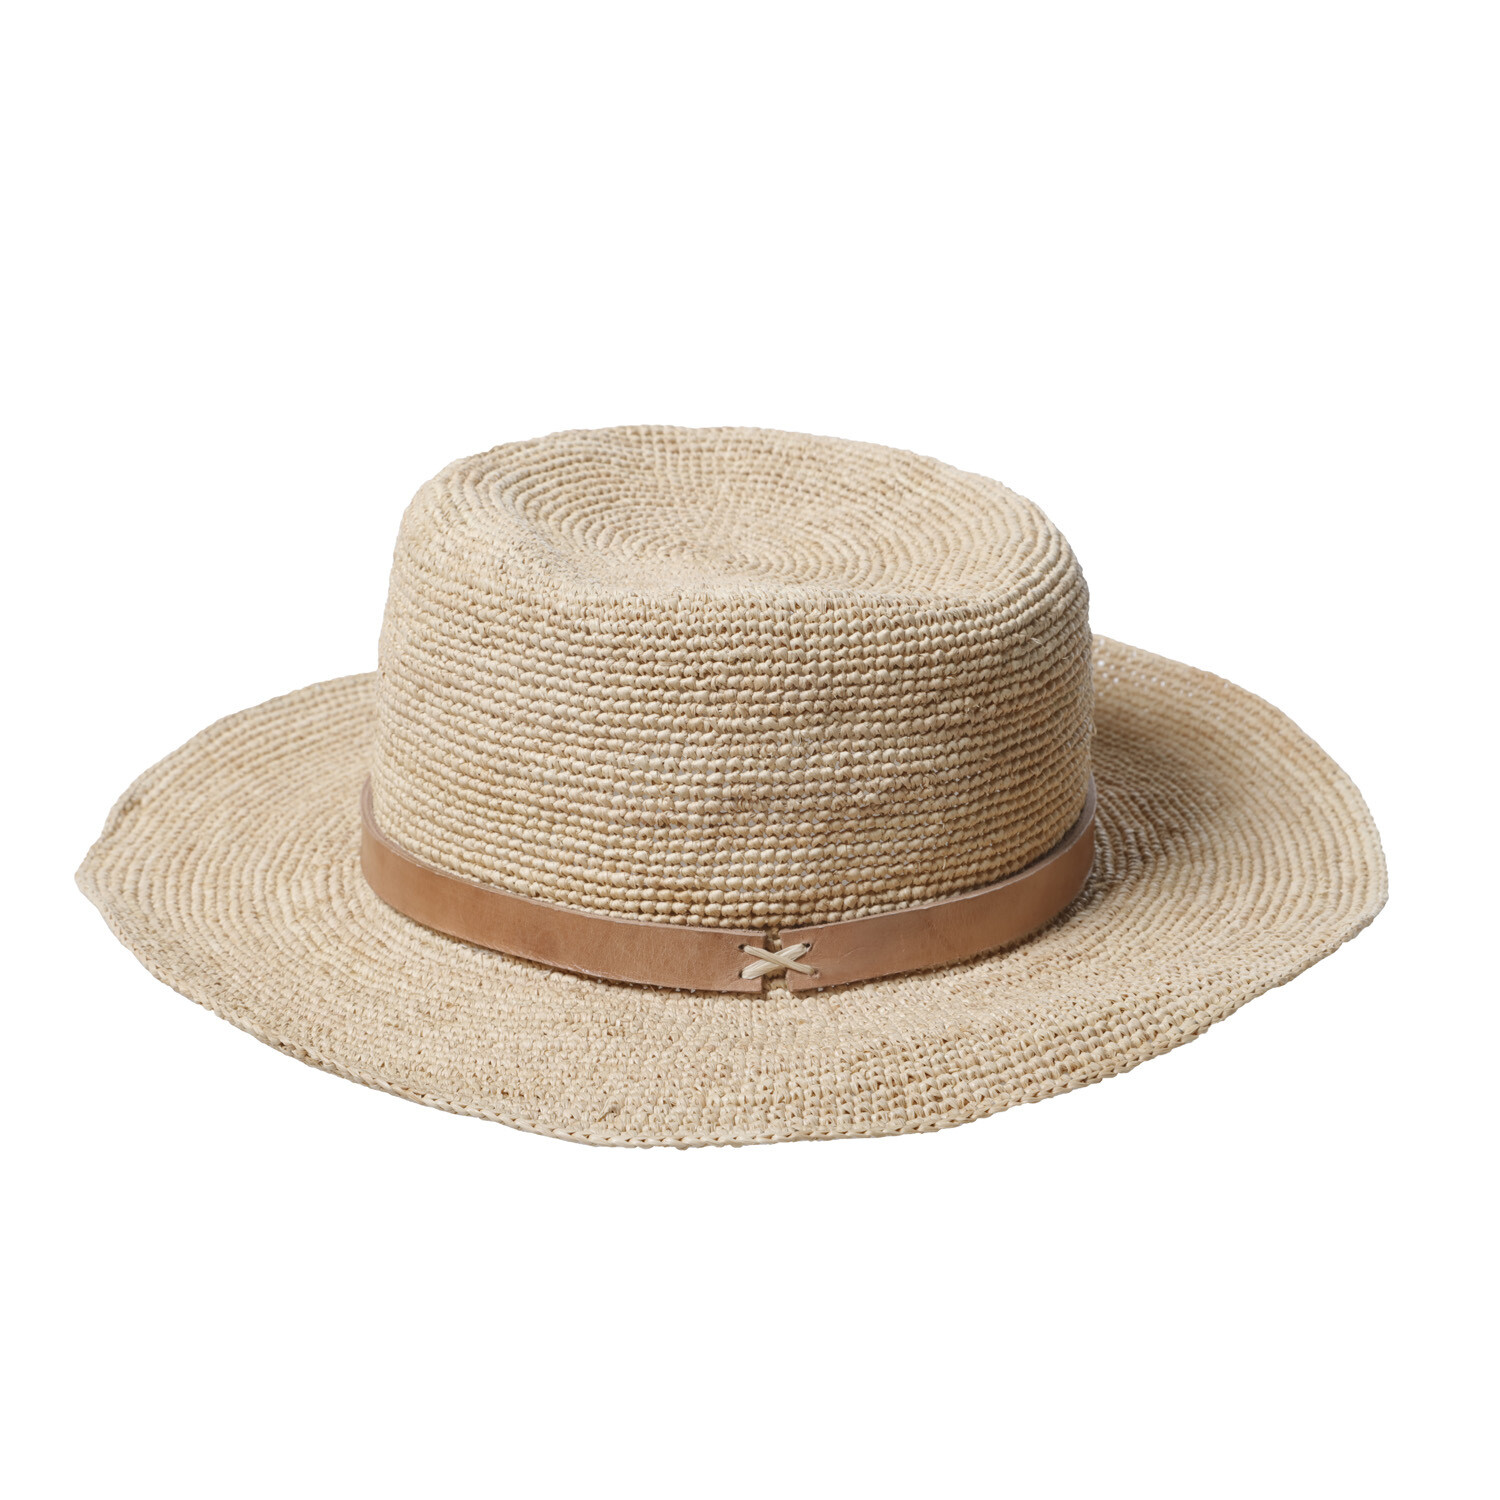 Gaston Hat - Medium brim - Natural